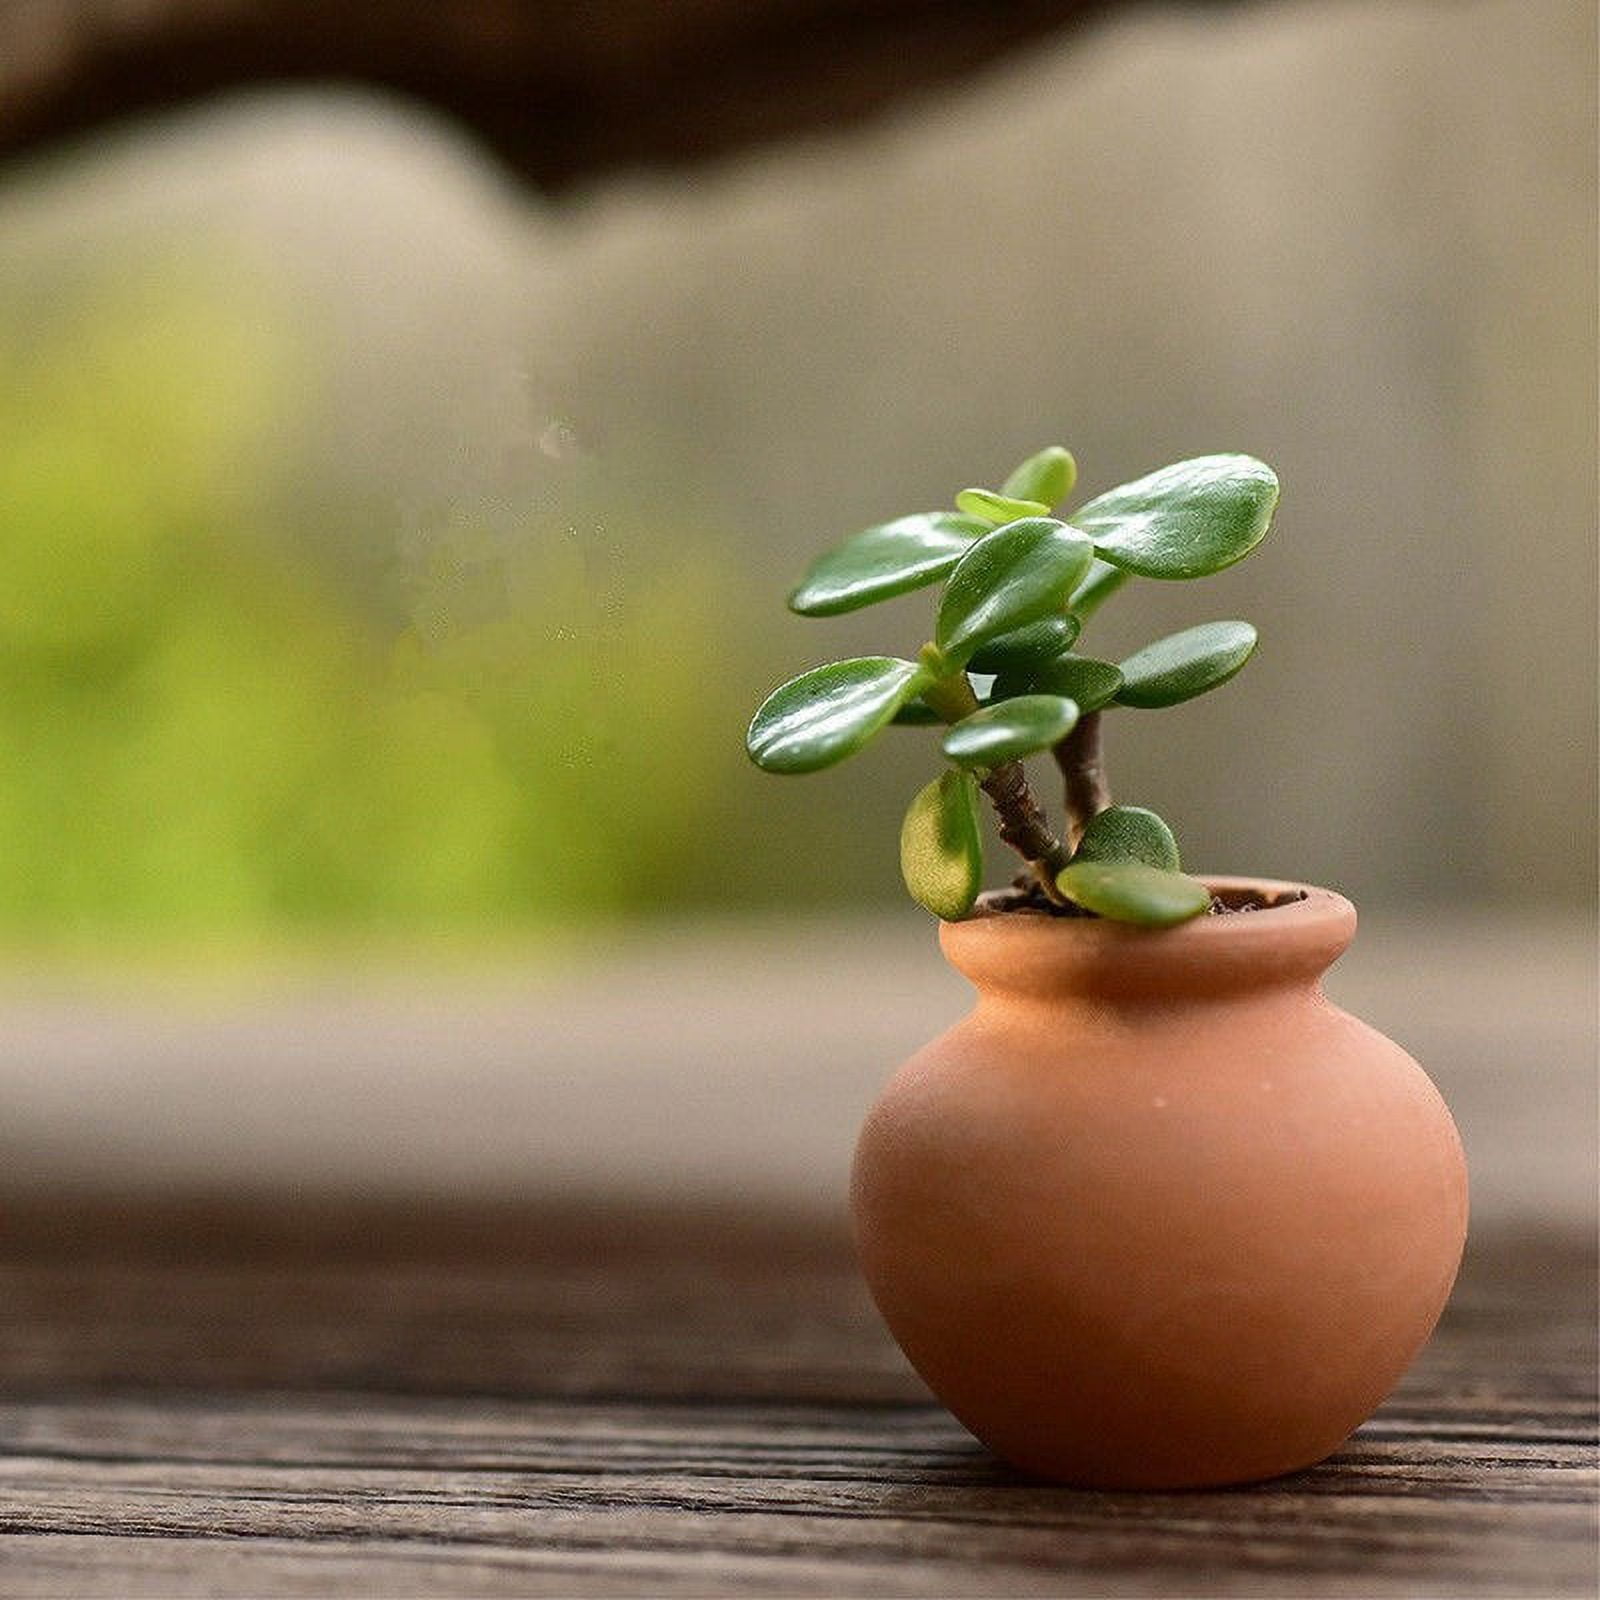 Terracotta Tea Clay Pot – Té Company